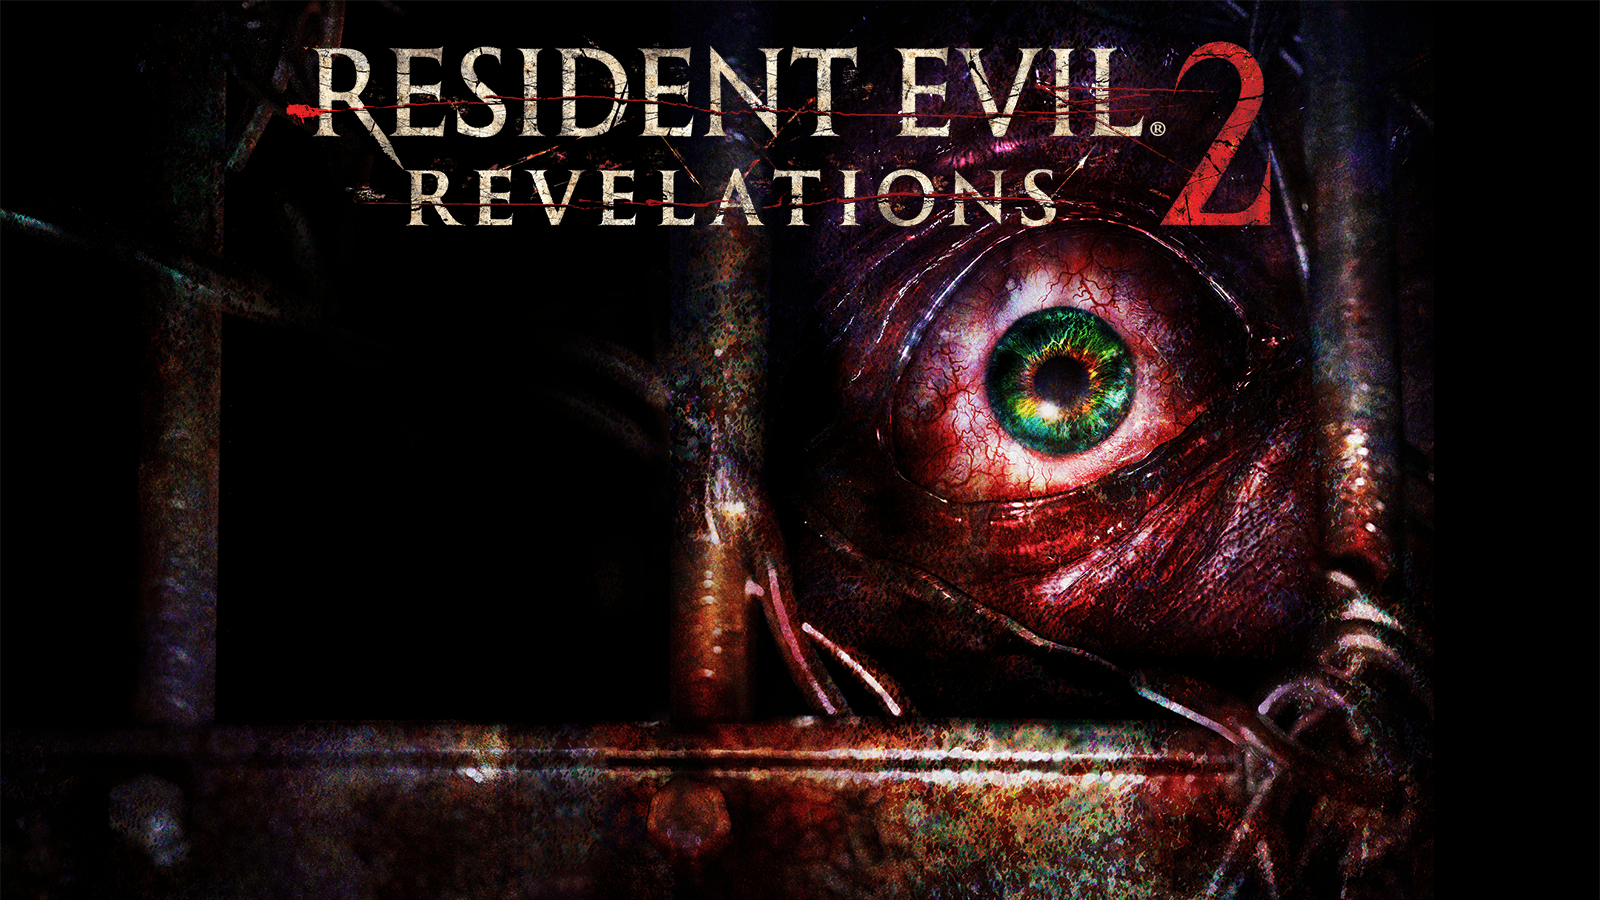 Resident Evil: Revelations 1 & 2 Announced for Nintendo